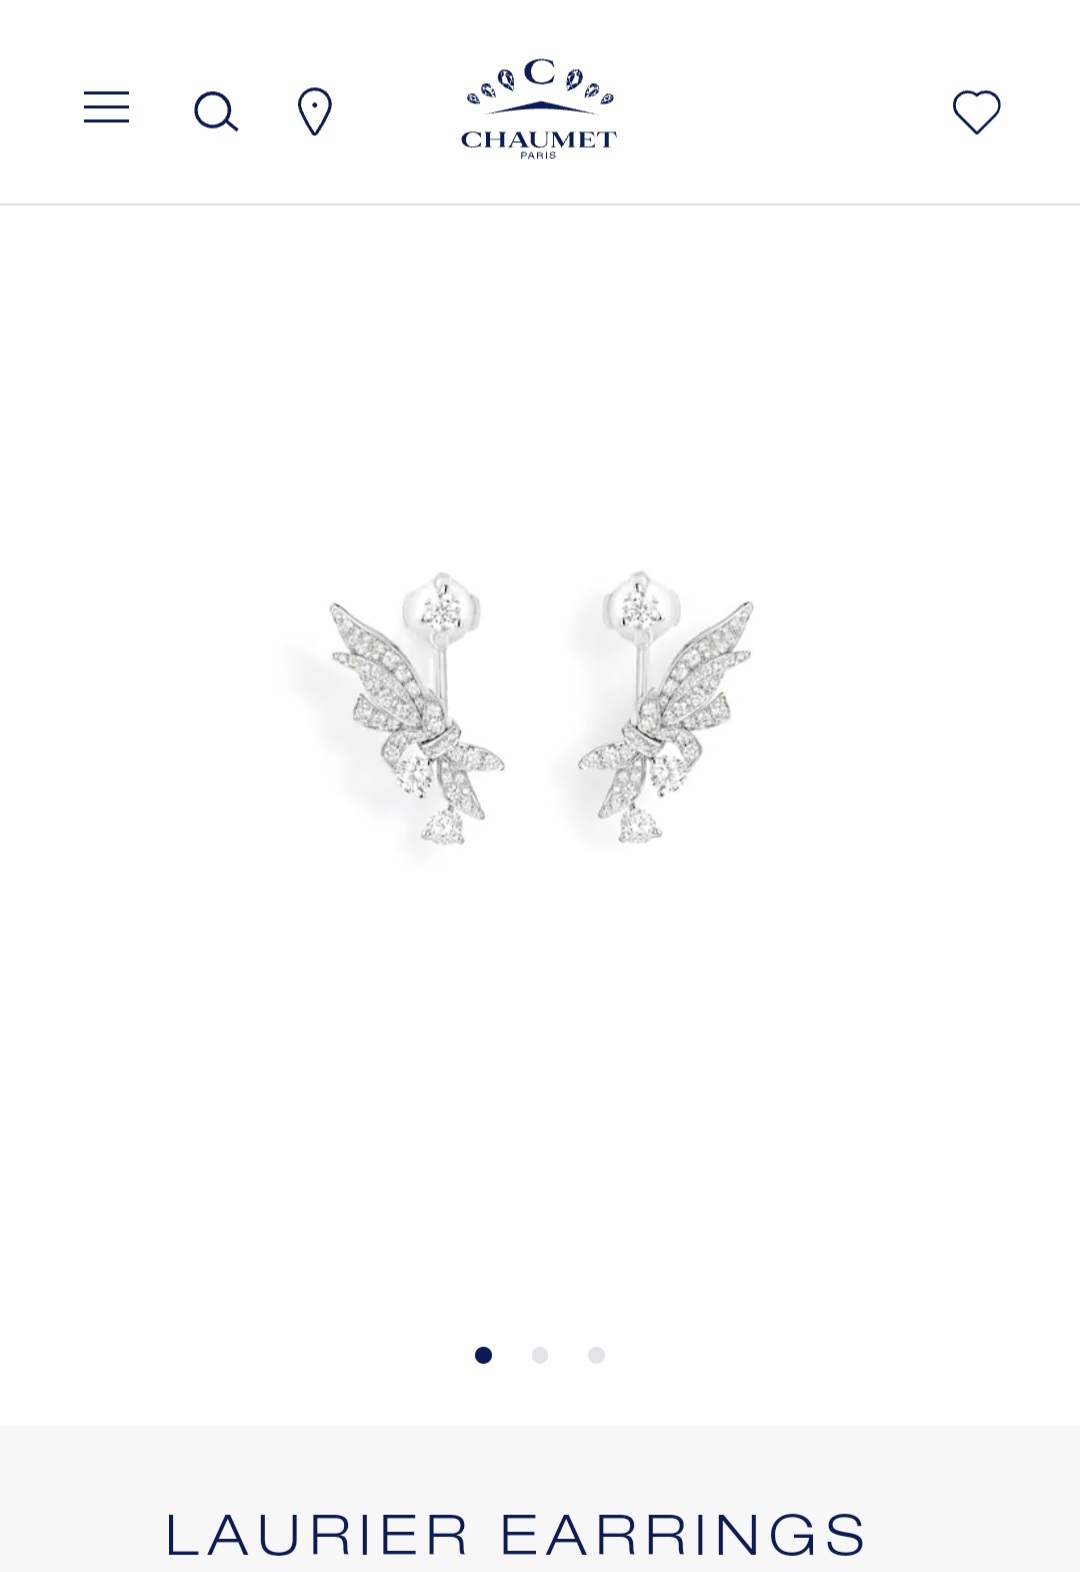 Chaumet Laurier earrings